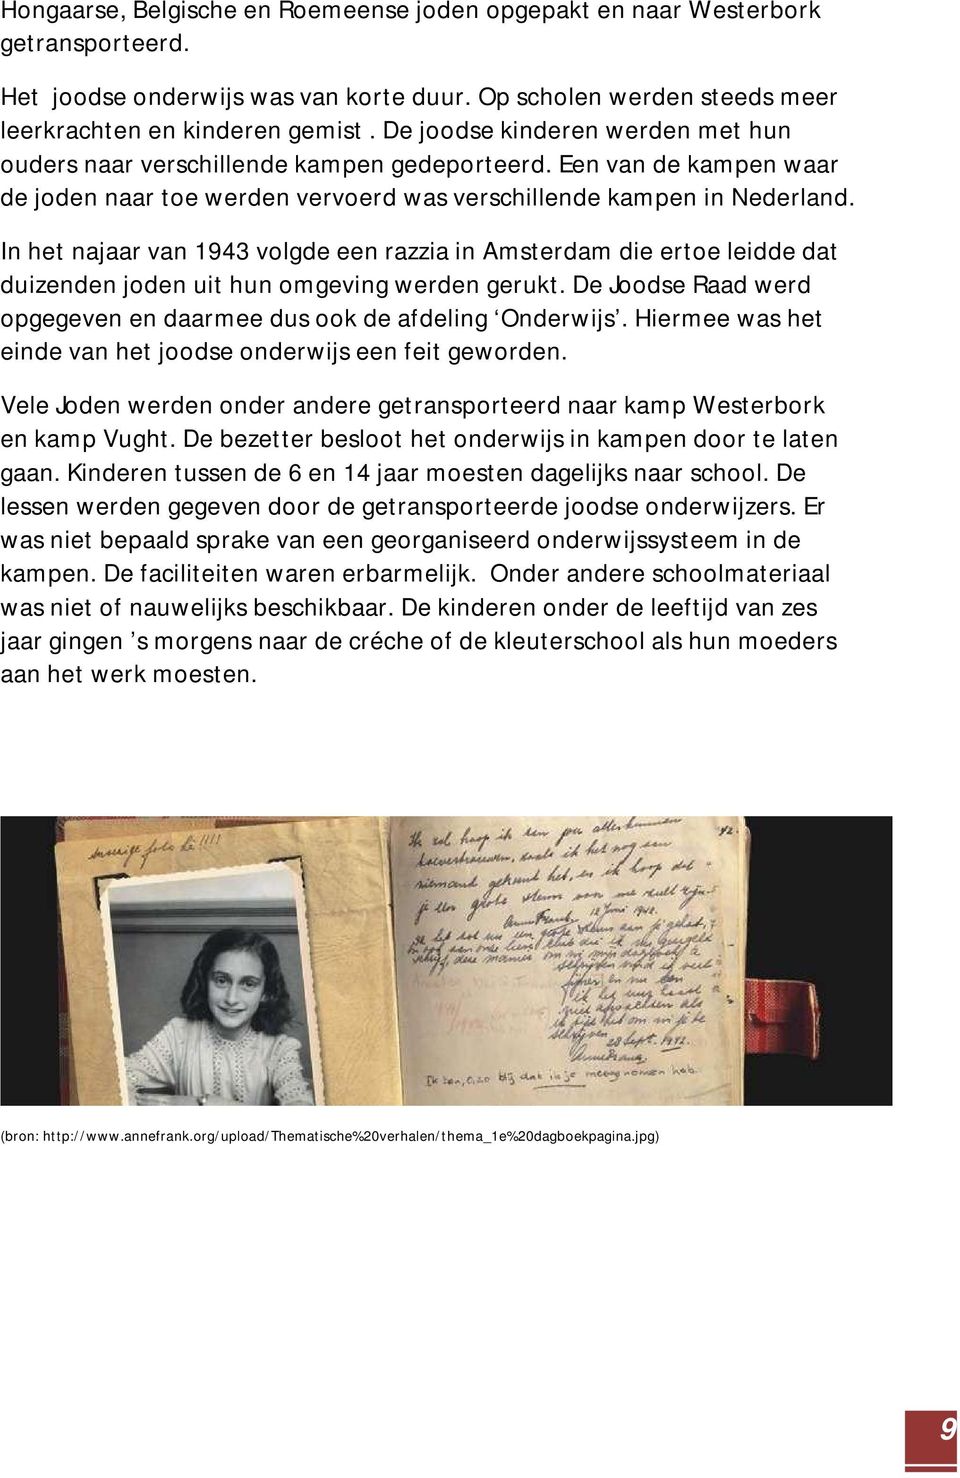 In het najaar van 1943 volgde een razzia in Amsterdam die ertoe leidde dat duizenden joden uit hun omgeving werden gerukt. De Joodse Raad werd opgegeven en daarmee dus ook de afdeling Onderwijs.